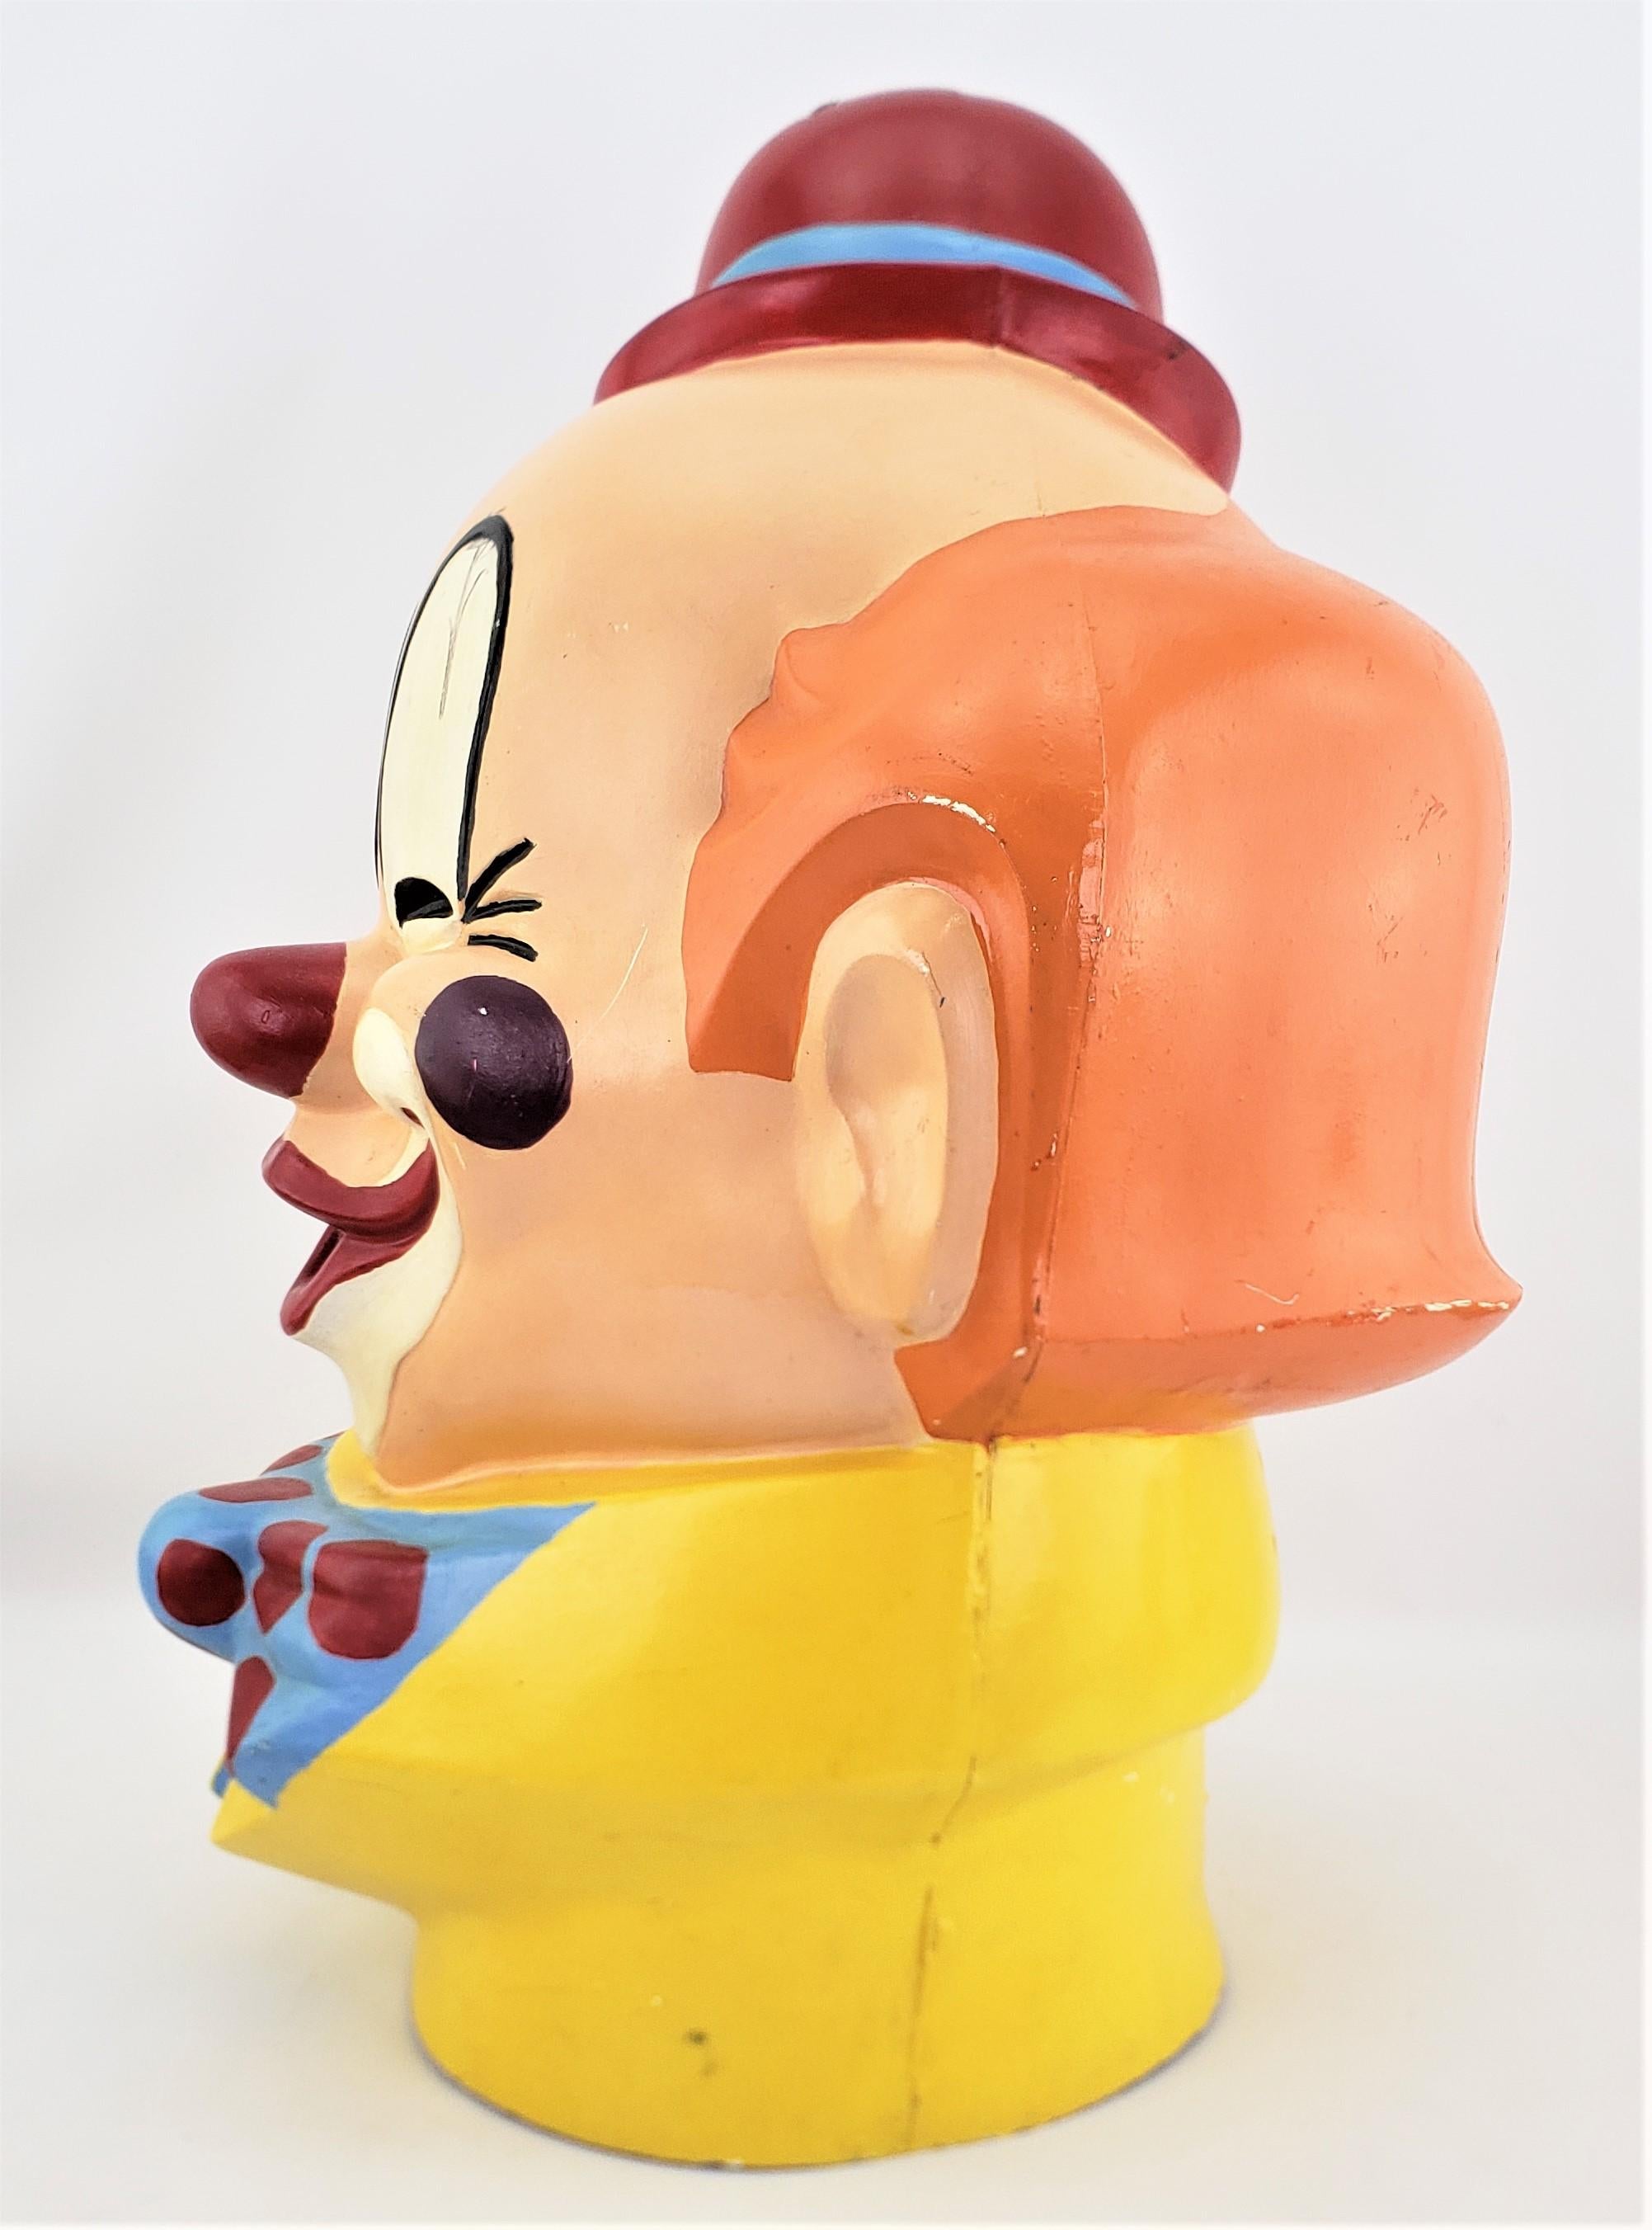 clown head carnival game